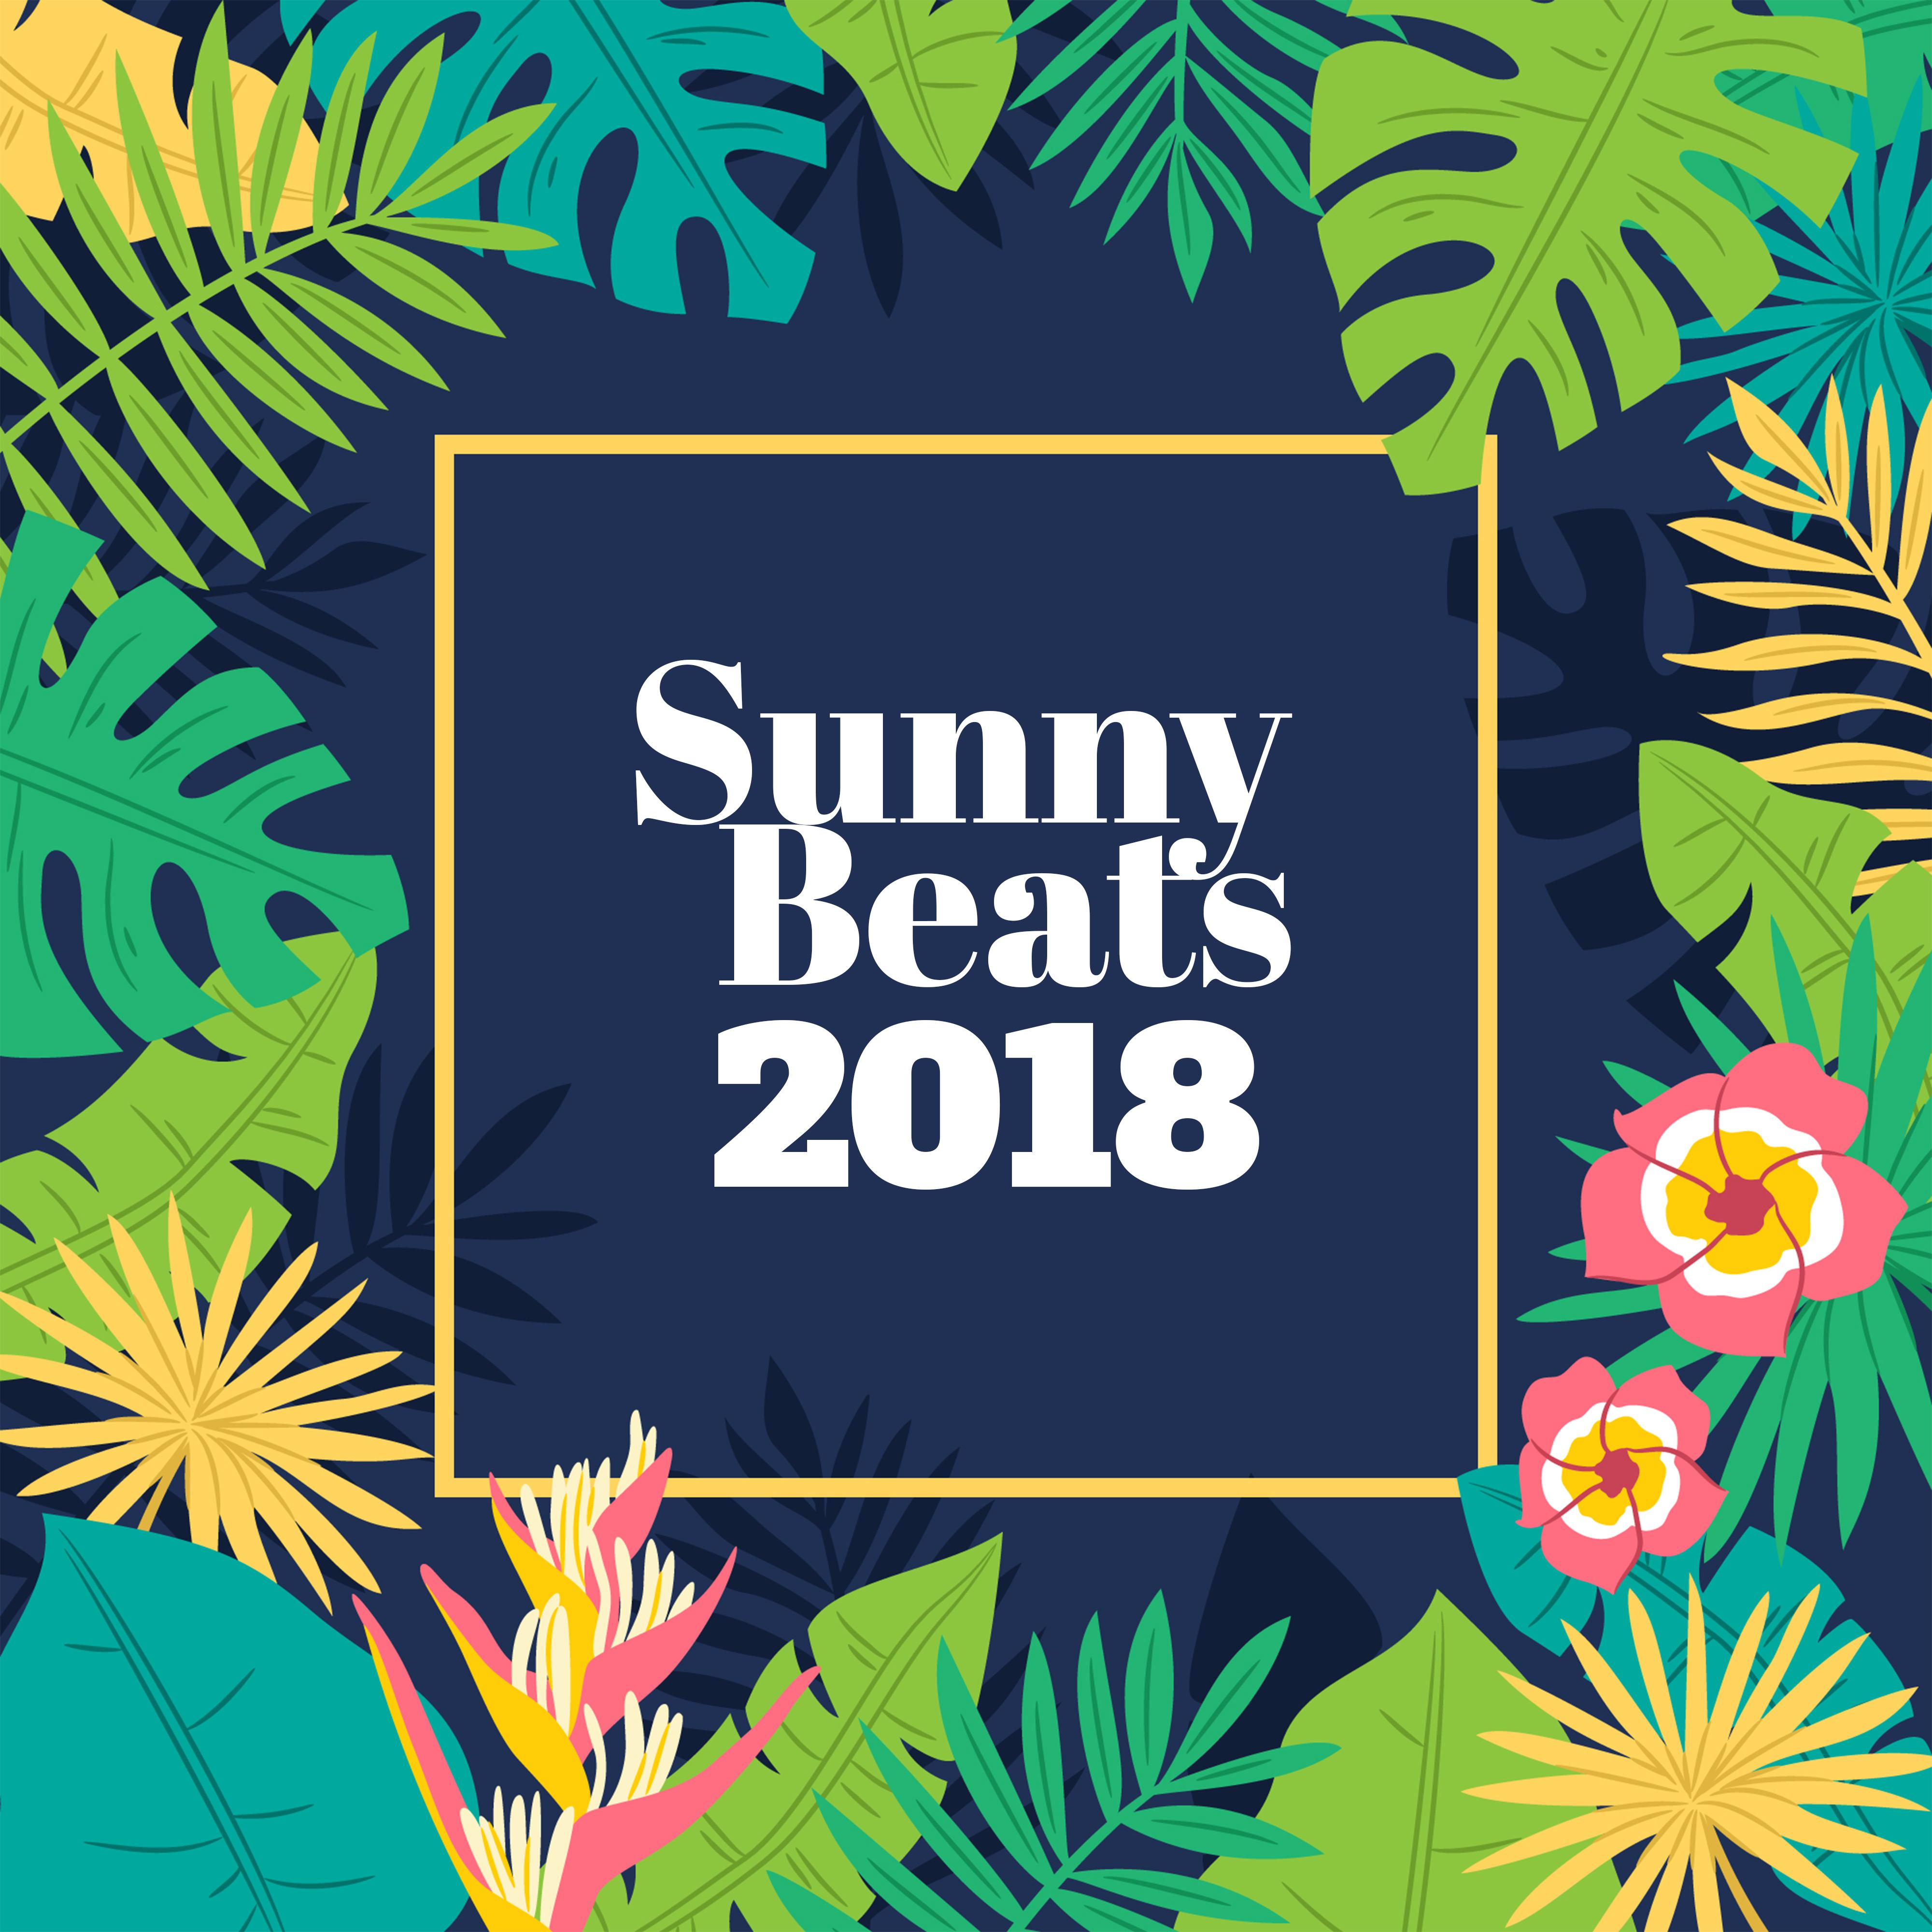 Sunny Beats 2018